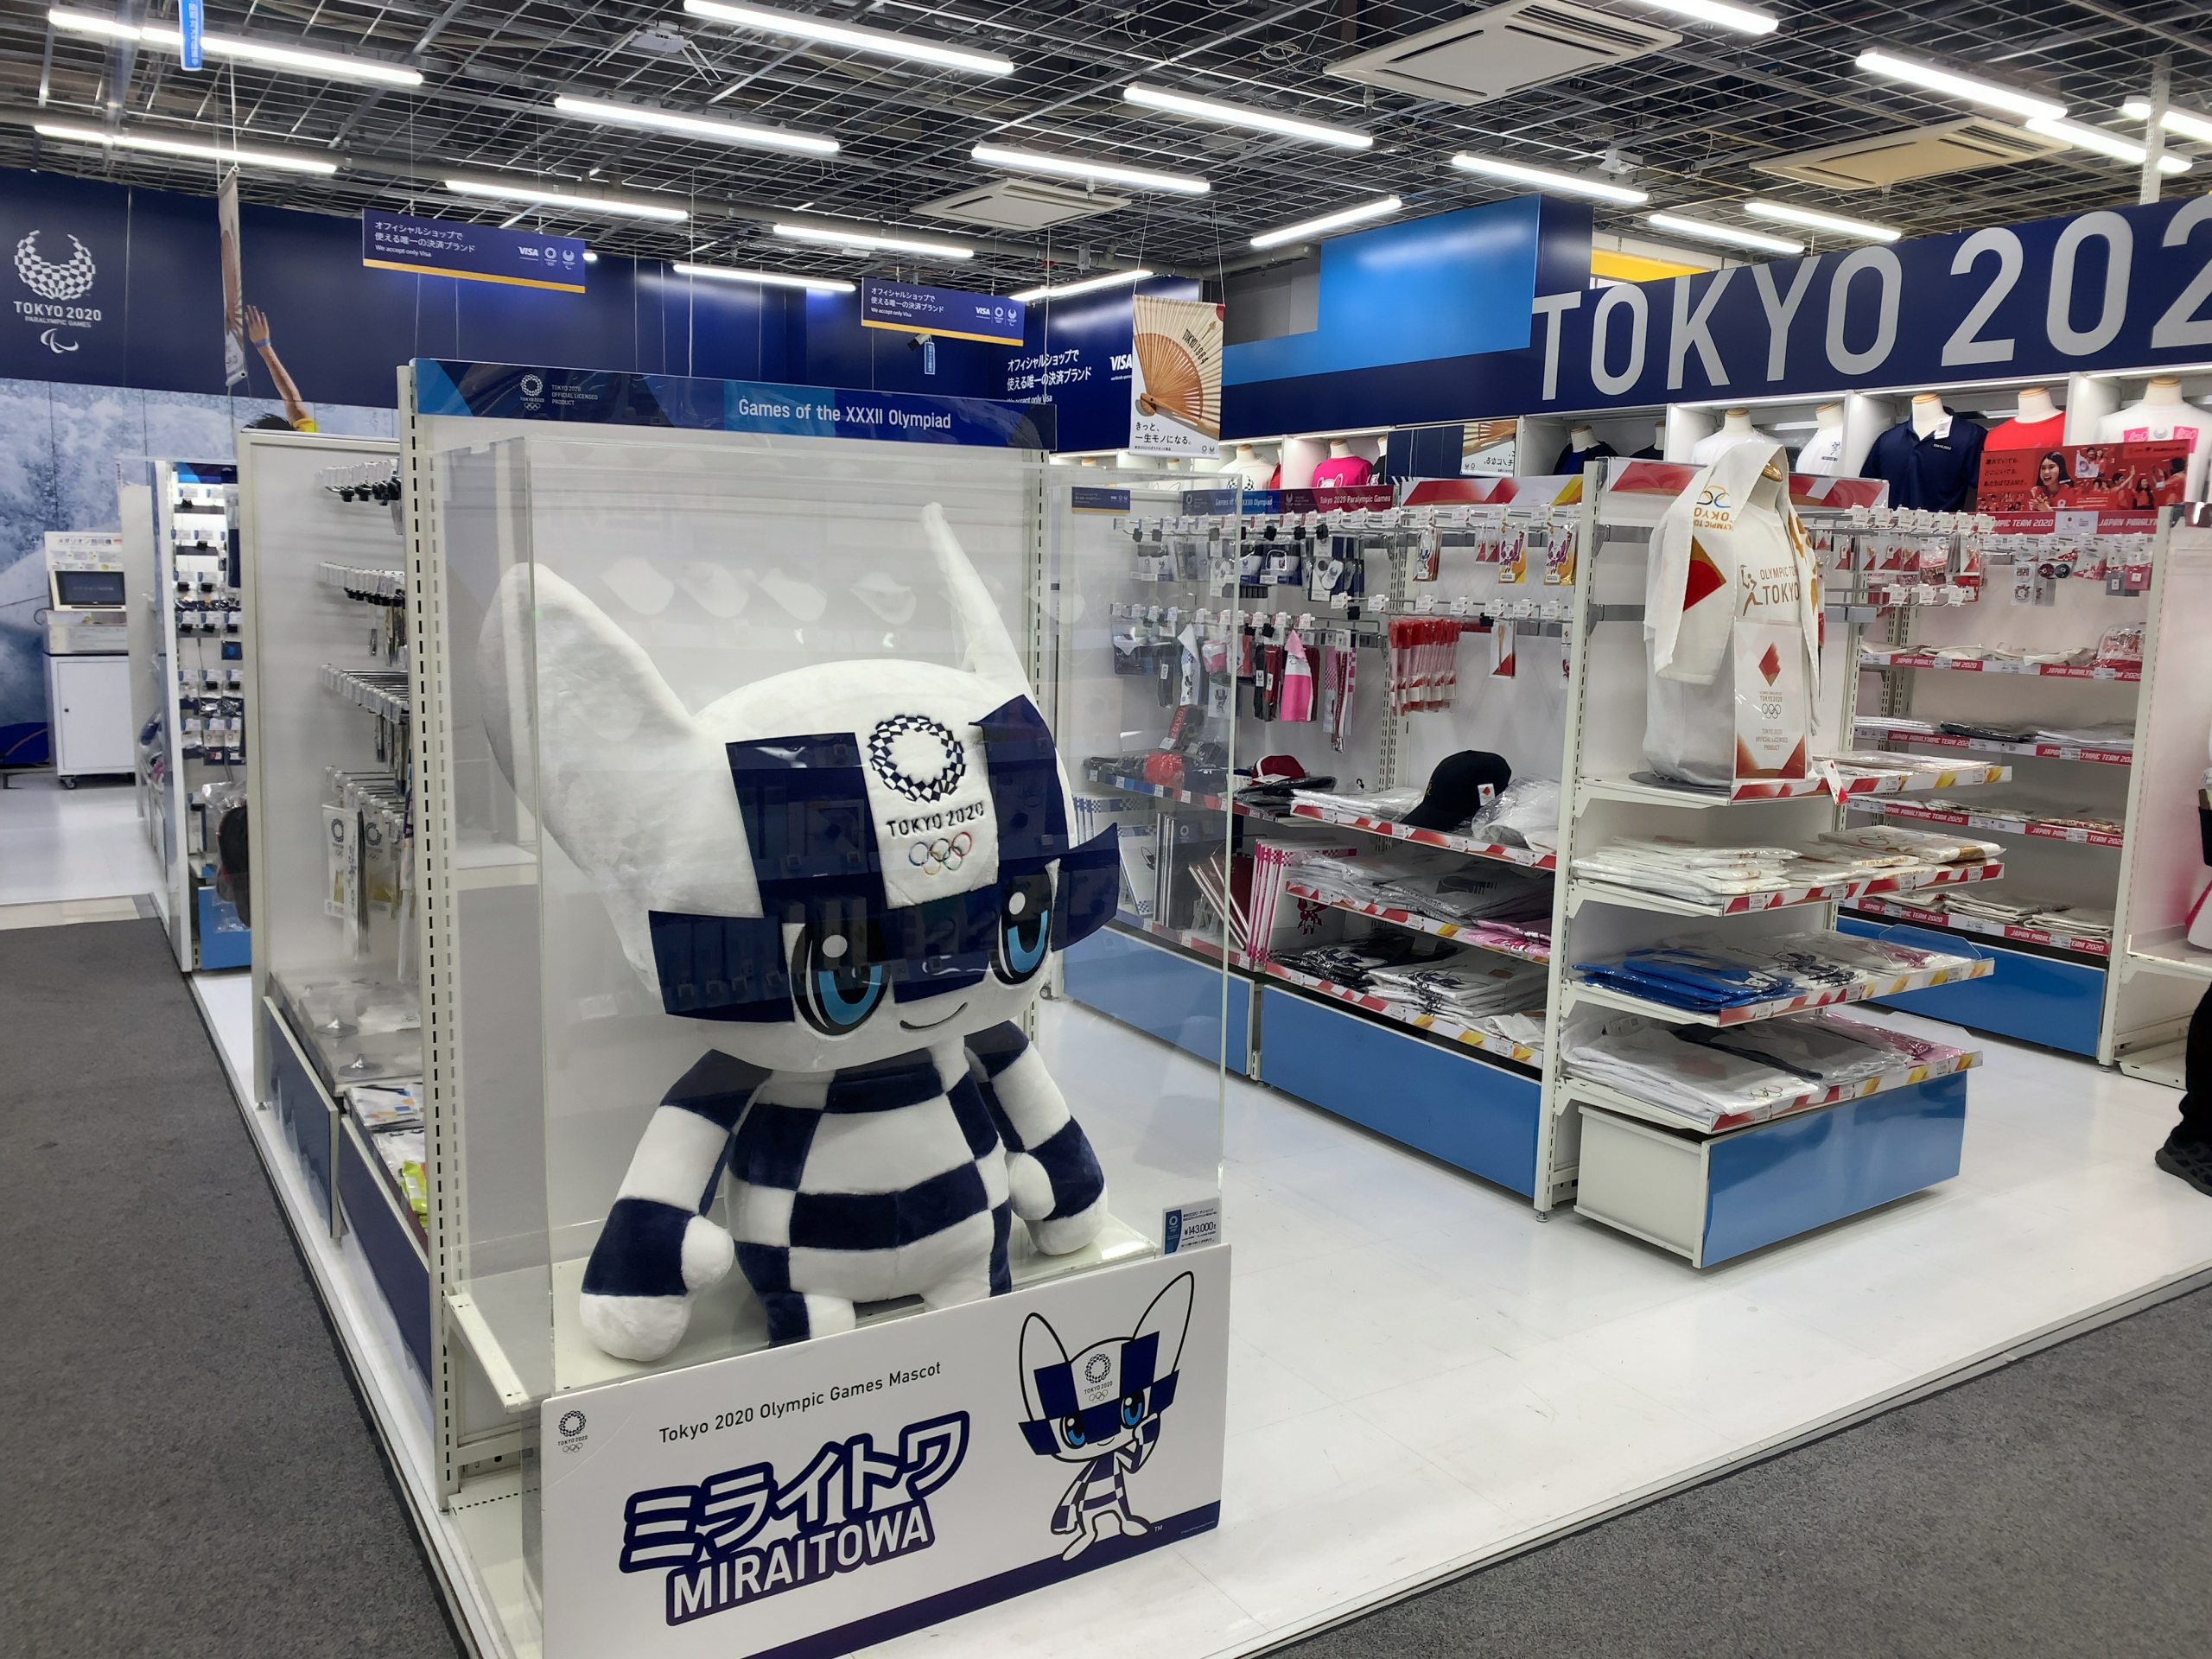 Tokyo 2020 merchandise